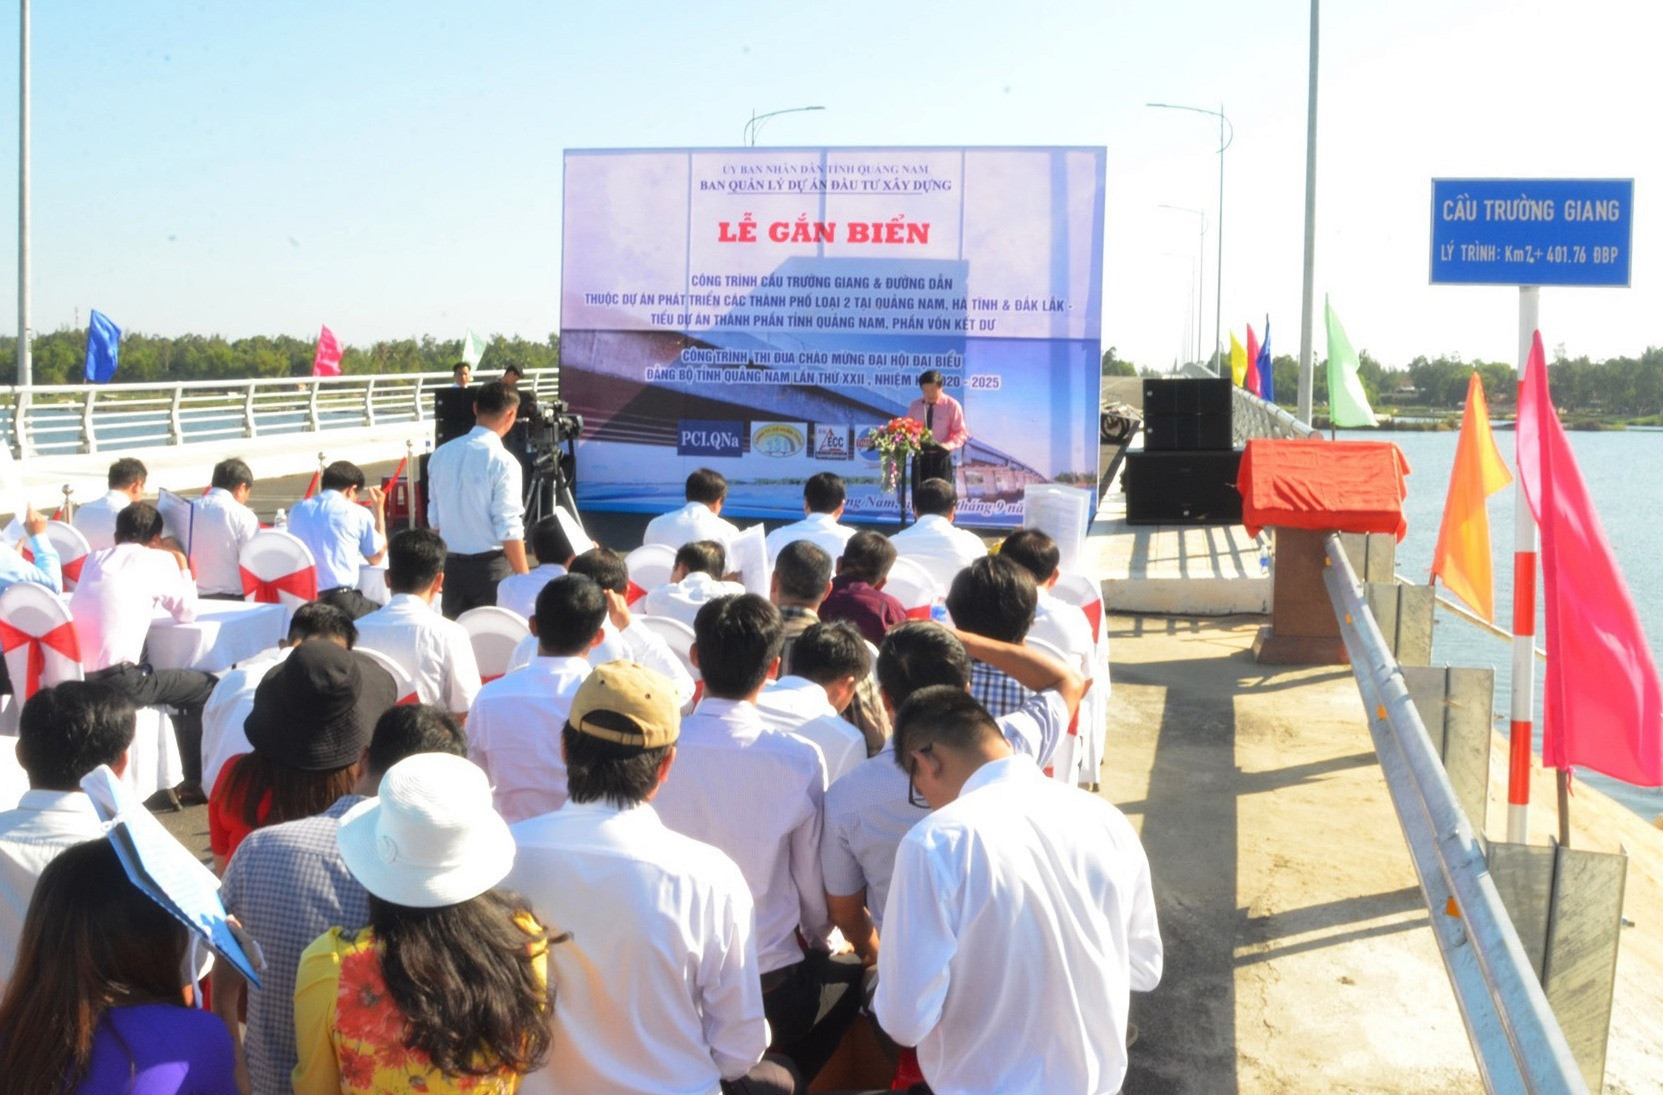 Nhiều người dân ở vùng đông dự lễ gắn biển hoàn thành công trình cầu Trường Giang và đường dẫn